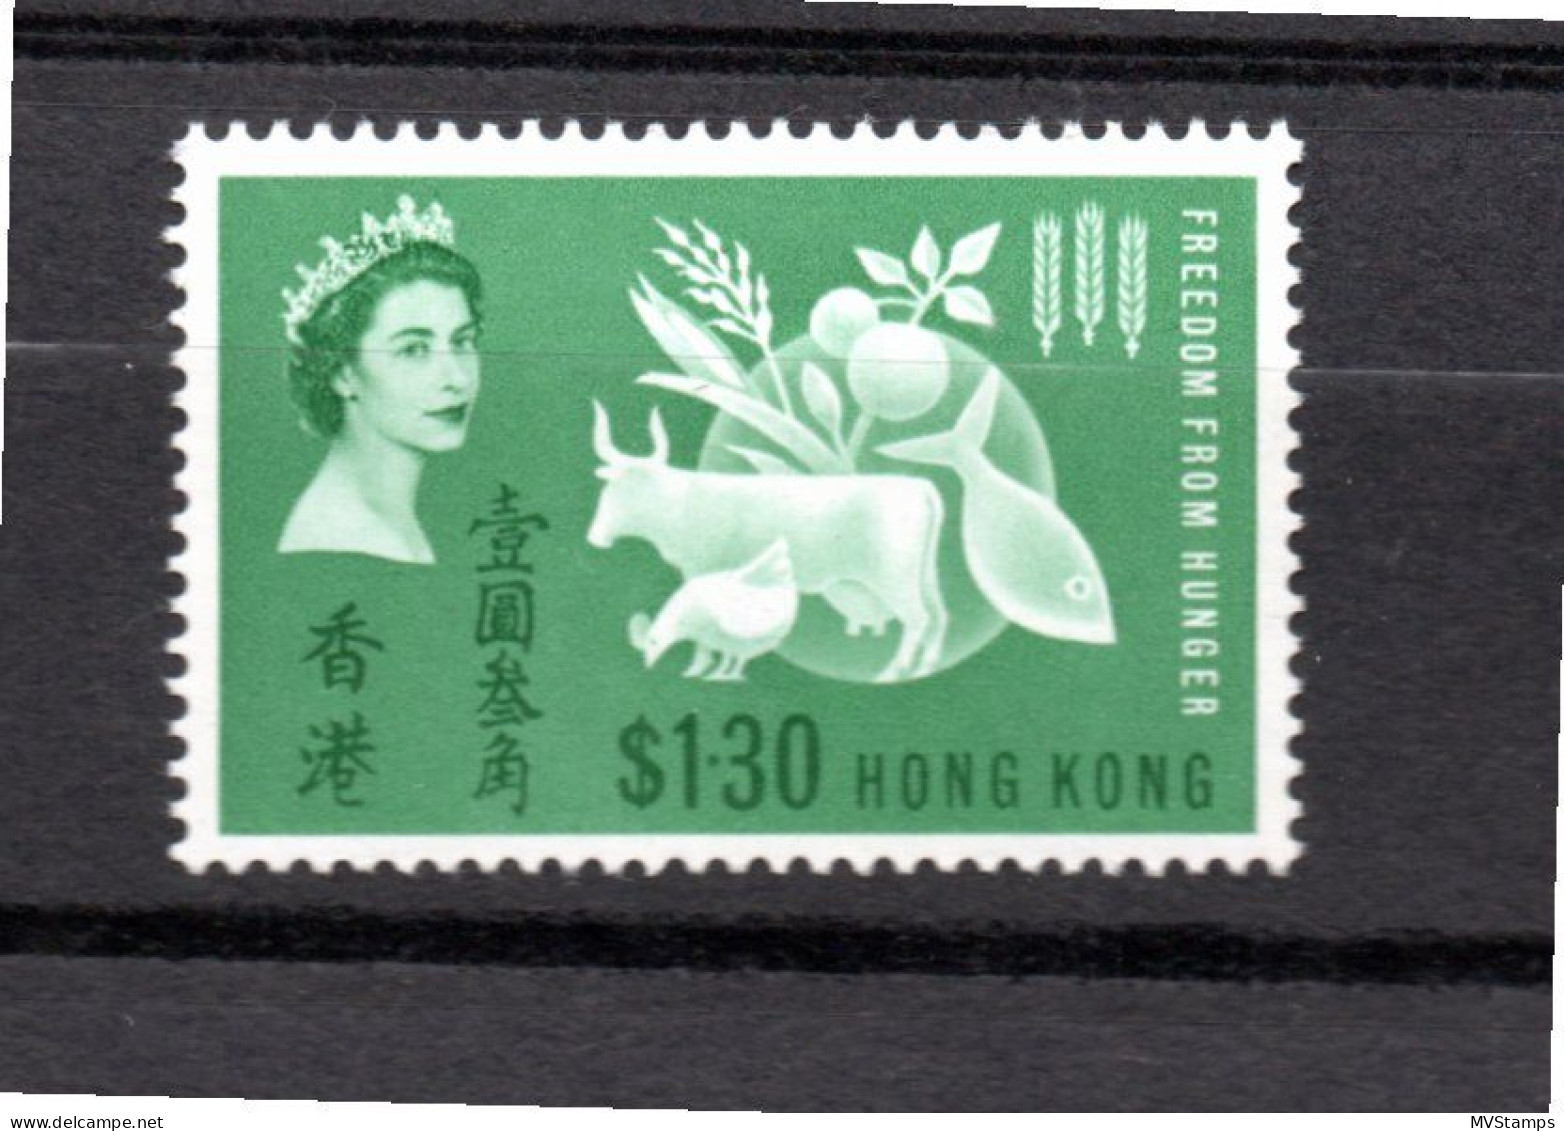 Hong Kong 1963 Hunger/Cow $1.30 Stamp (Michel 211) MNH - Ungebraucht